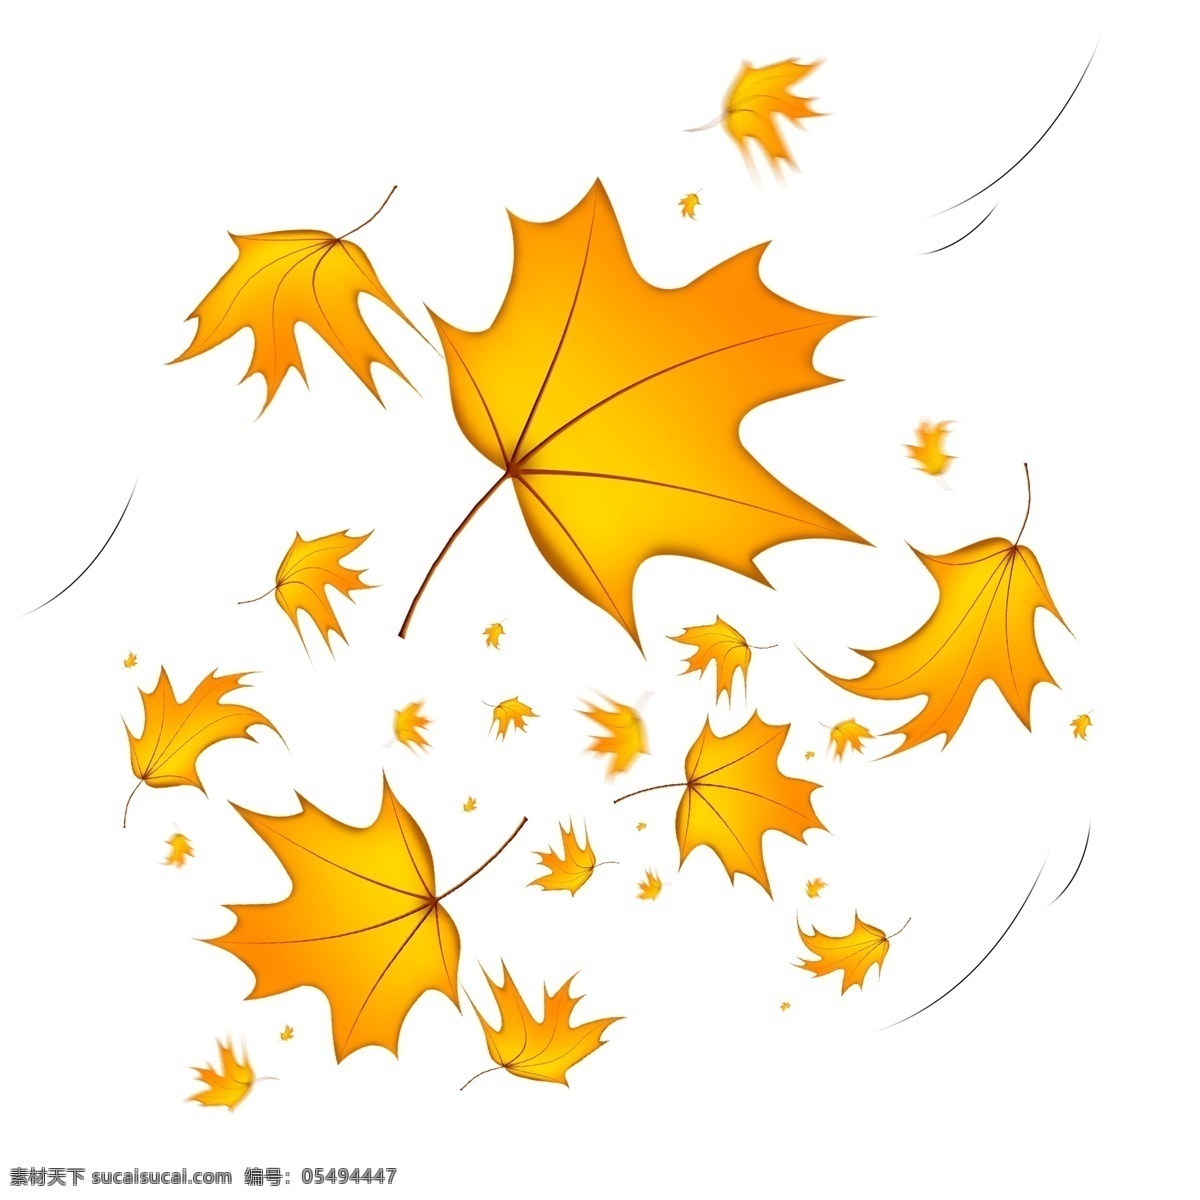 秋天 风吹 落 梧桐树 金黄 叶子 秋天落叶 梧桐树叶 树叶 金黄叶子